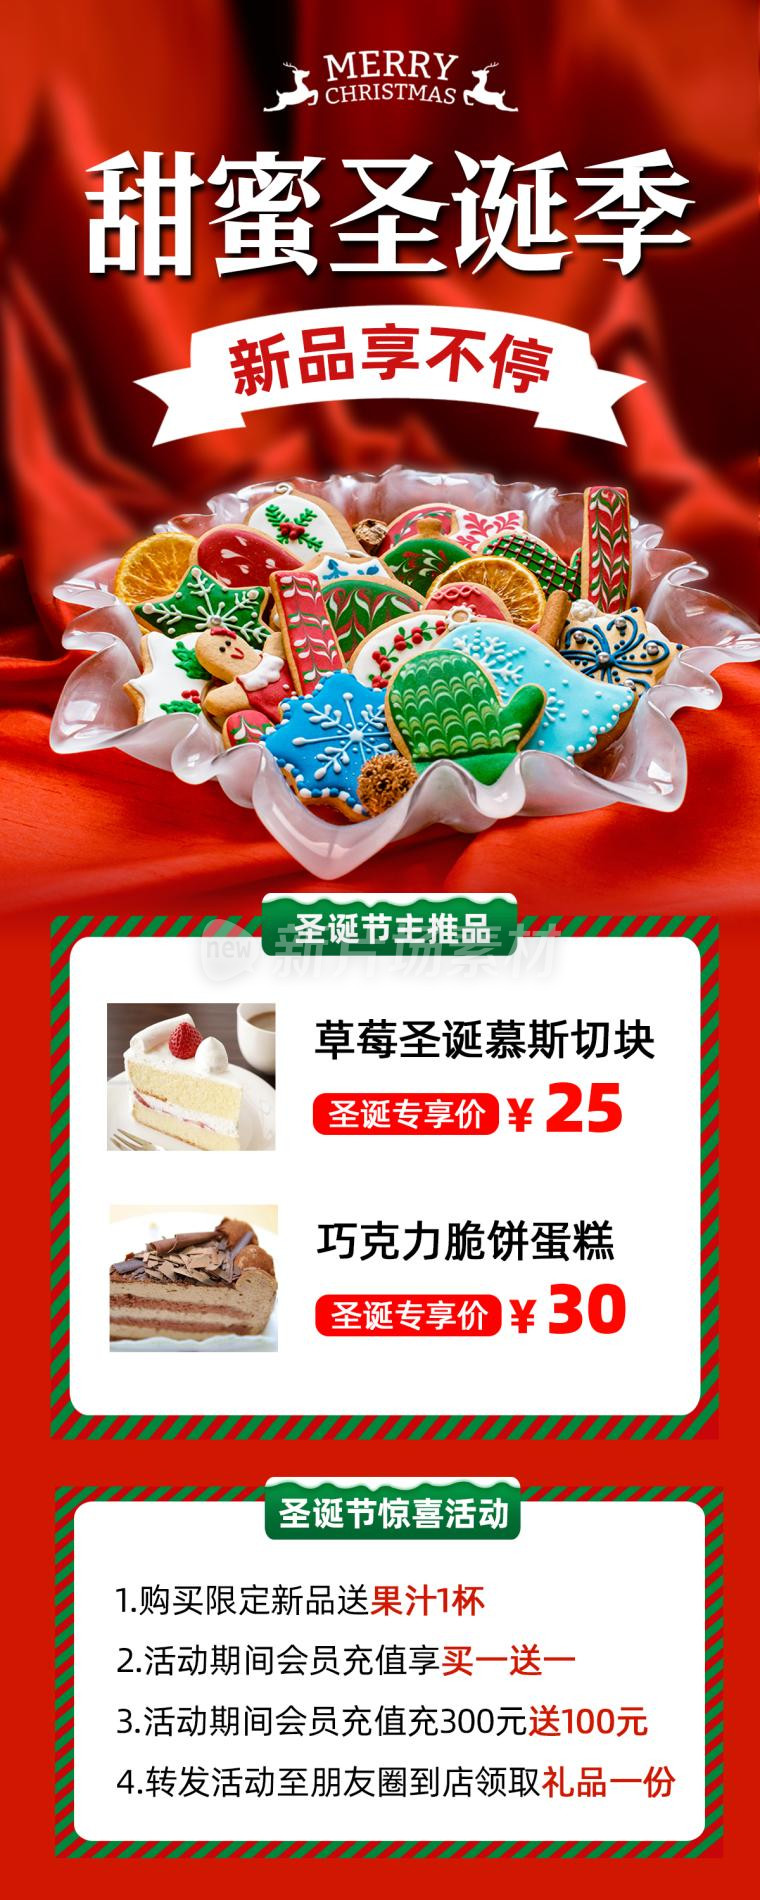 圣诞节甜品营销宣传时尚长图海报